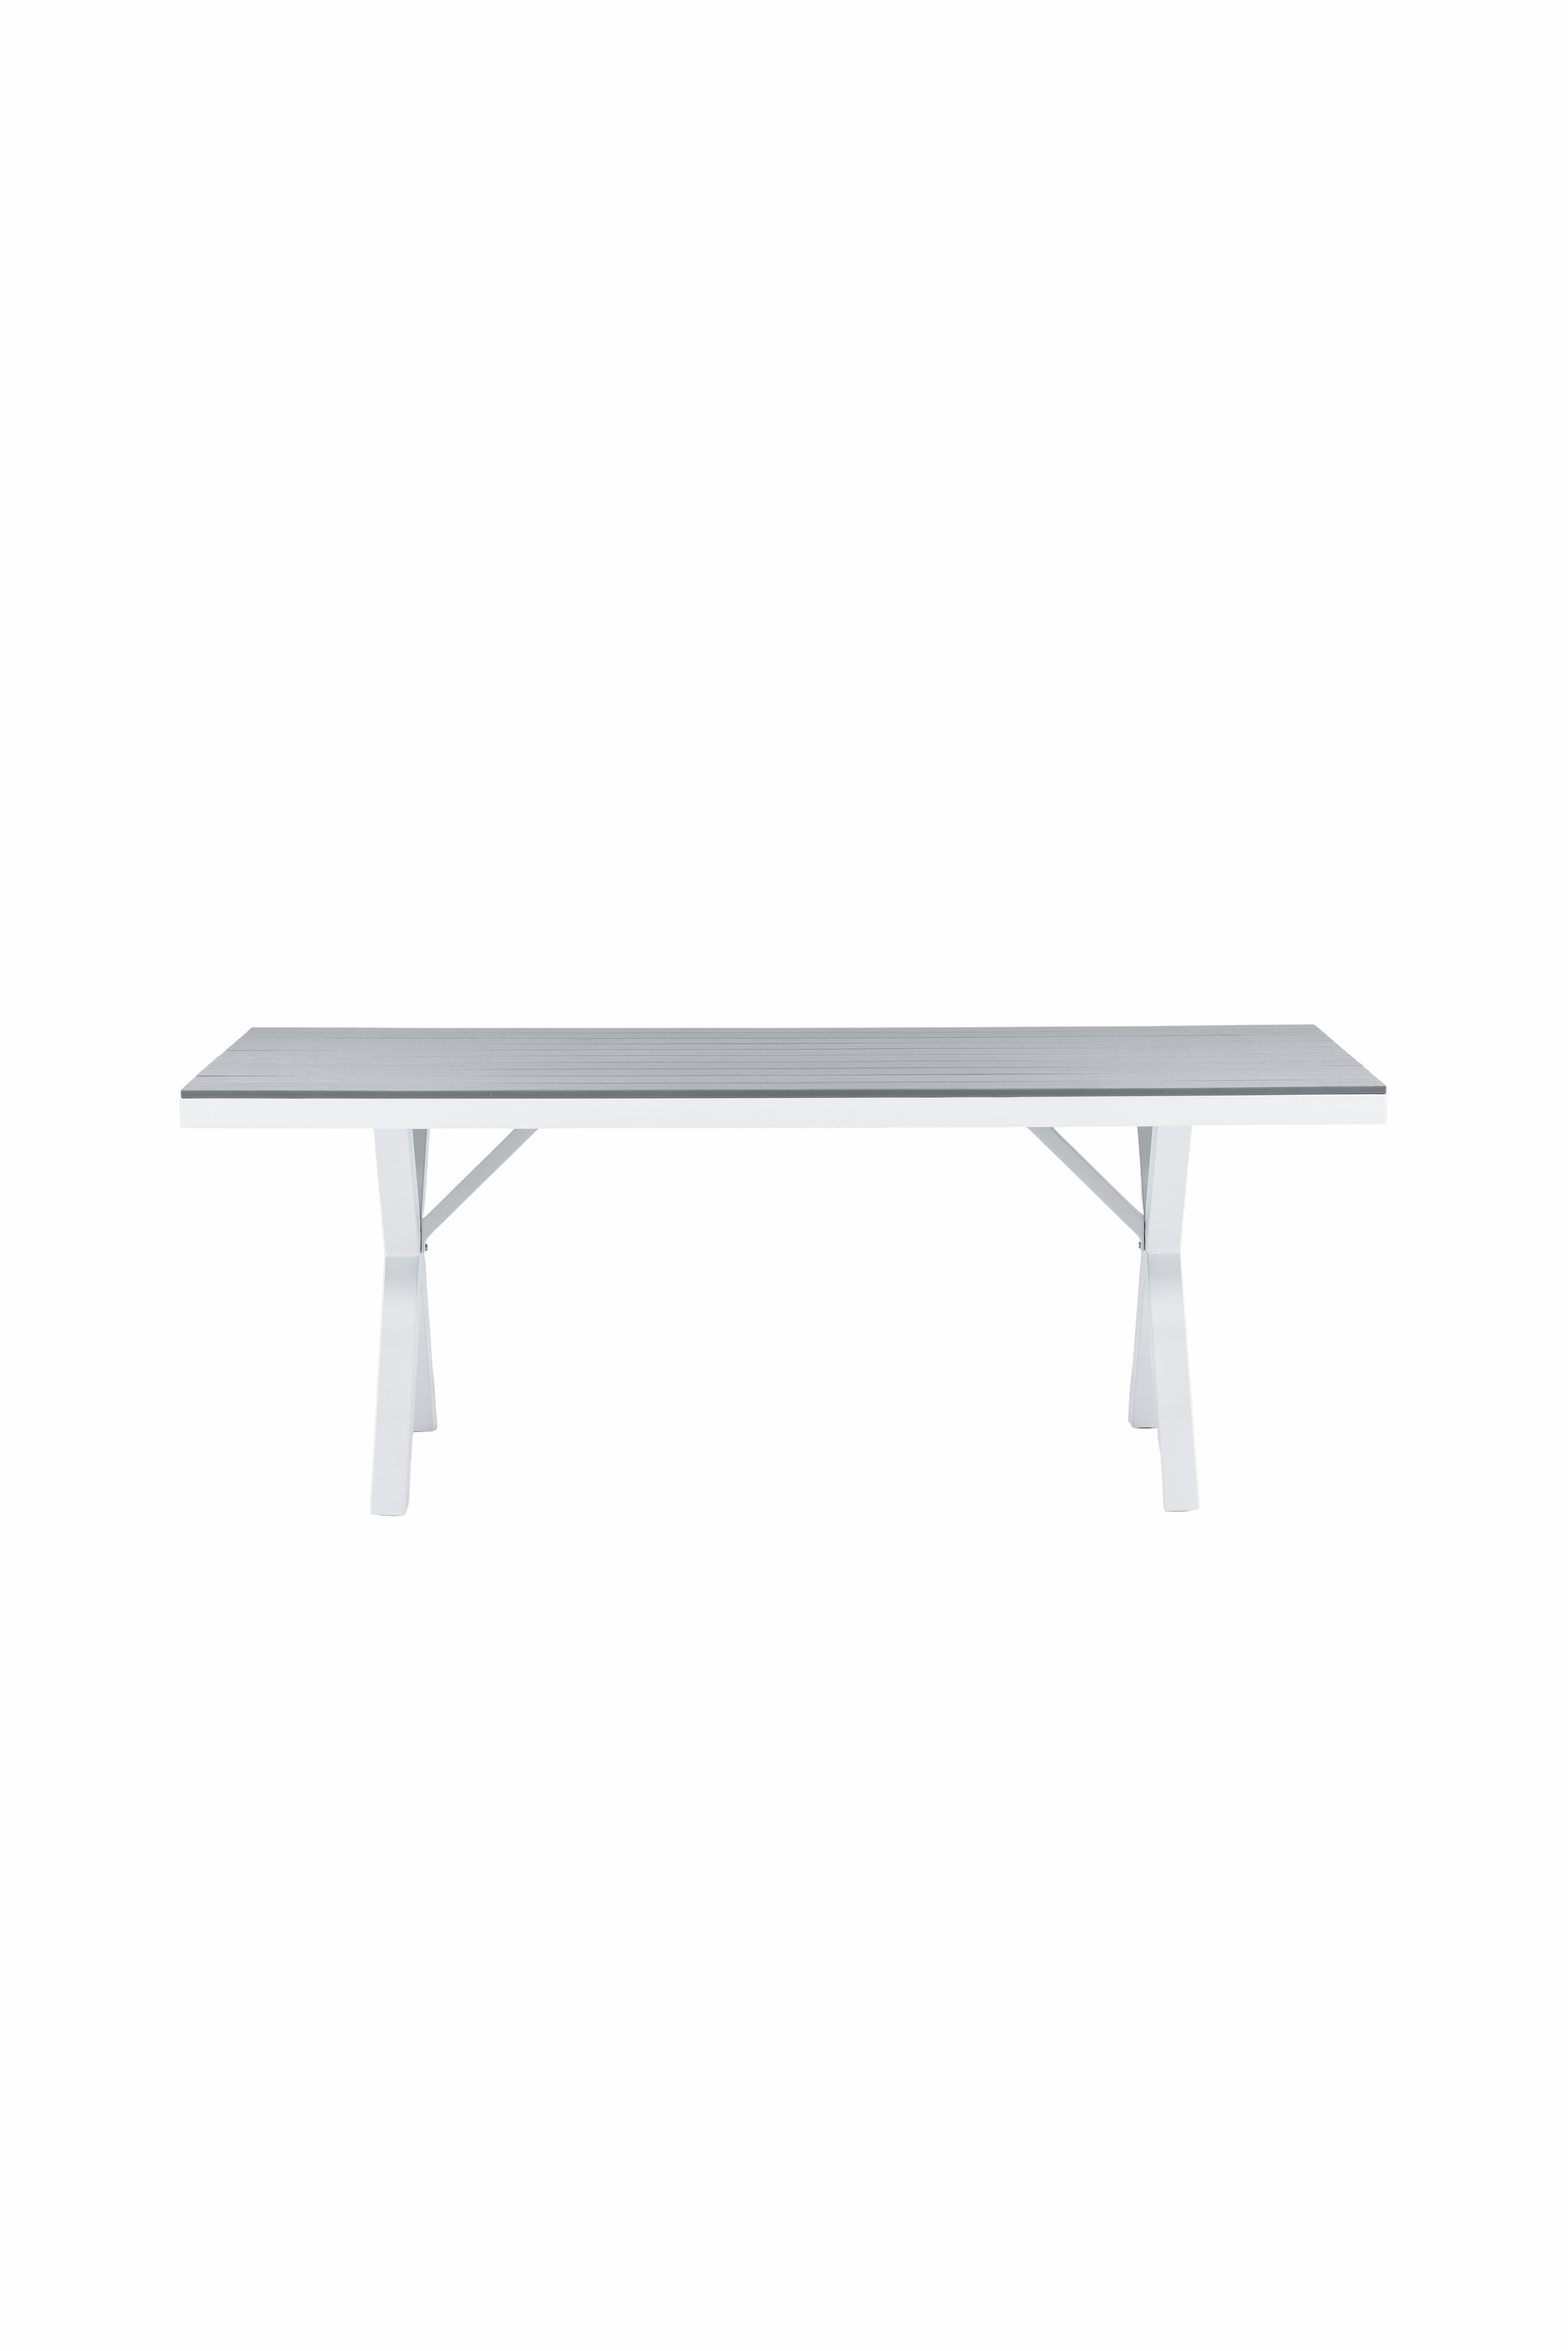 VENTURE DESIGN Garcia havebord, rektangulær - lysegrå aintwood og hvid aluminium (100x200)